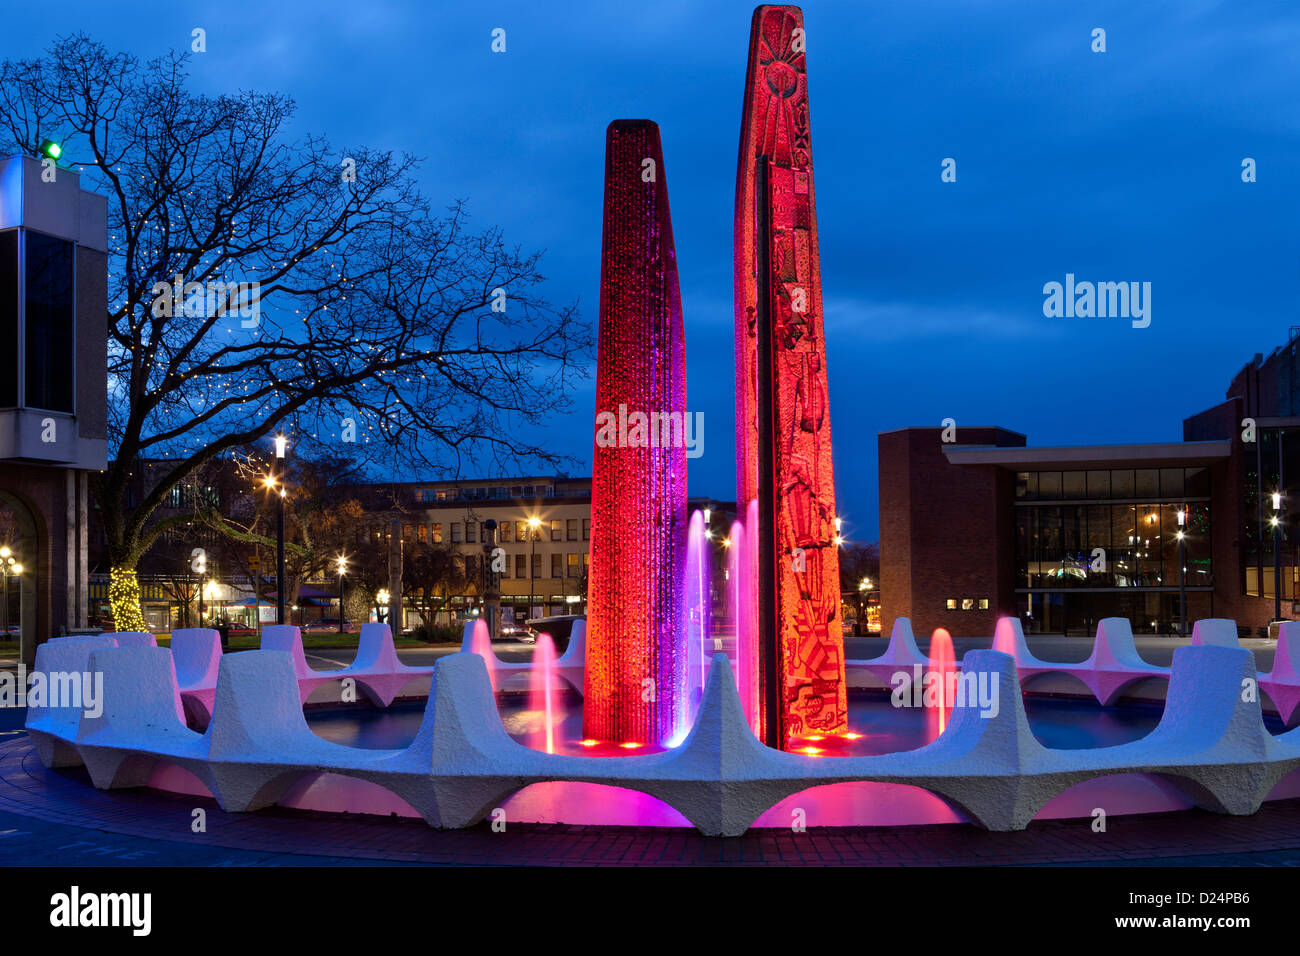 Centennial Square et la fontaine illuminée pour Noël.-Victoria, Colombie-Britannique, Canada. Banque D'Images